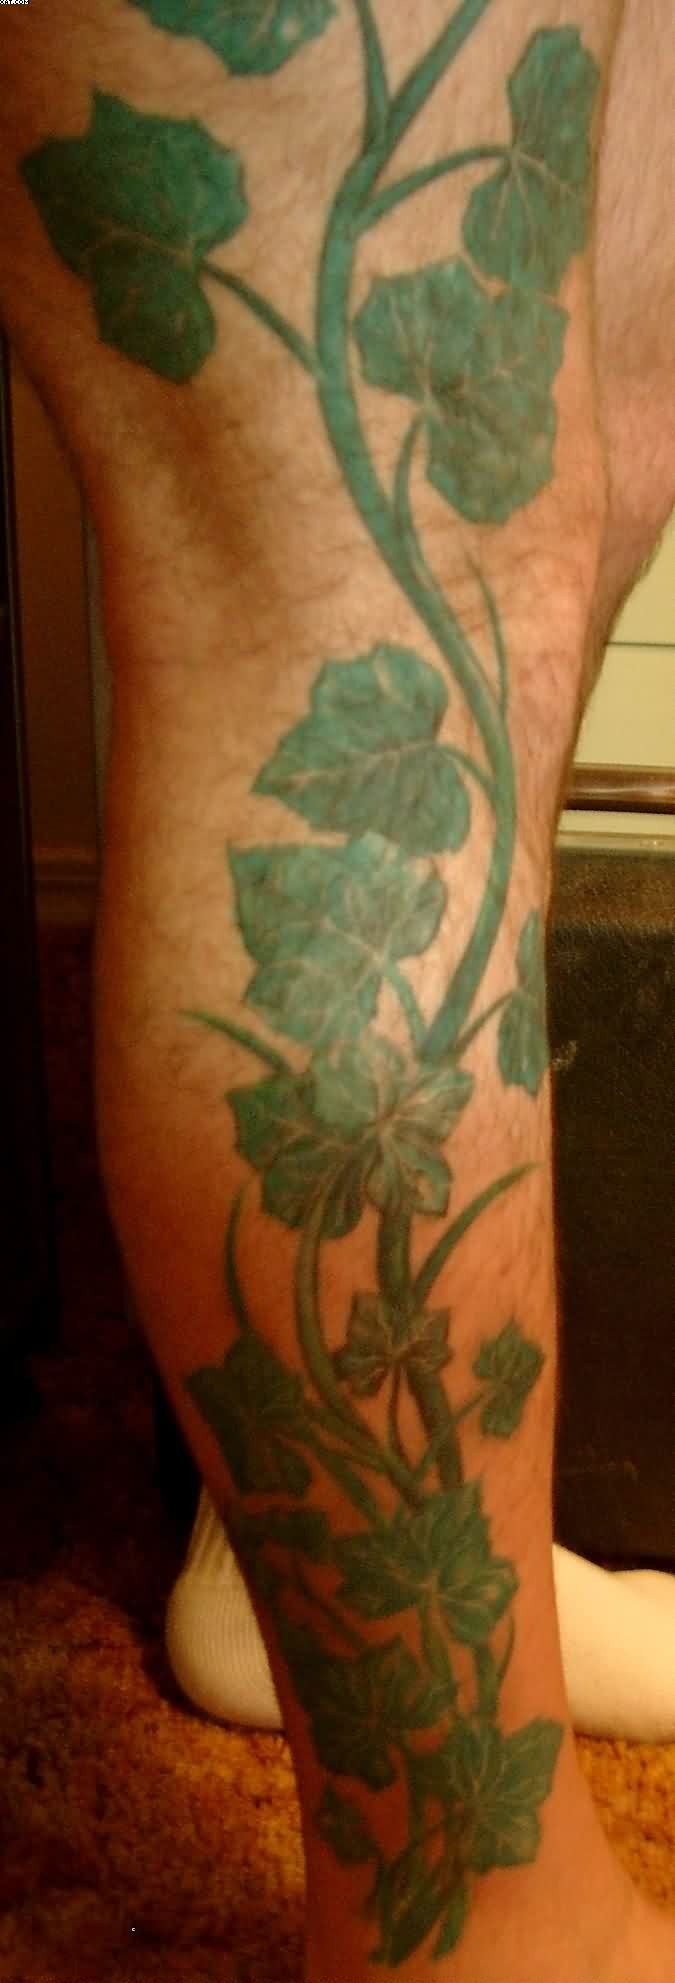 Big Green Plant Tattoo On Leg